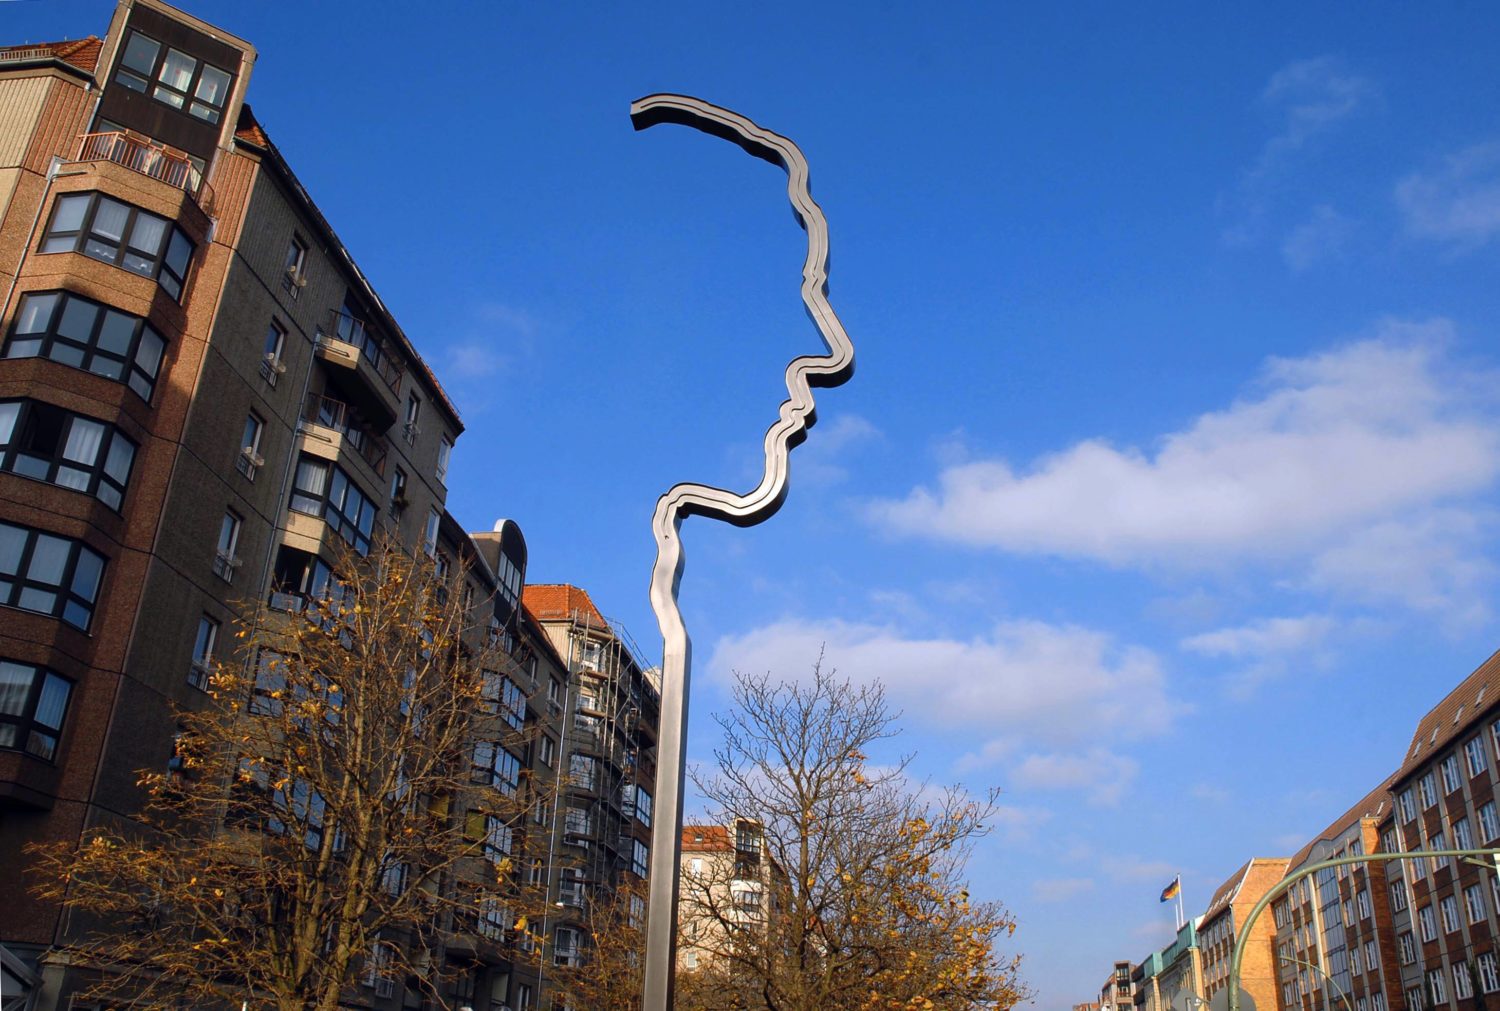 Das 17m hohe Stahlprofil wurde von Ulrich Klages geschaffen. Foto: Imago Images/PEMAX